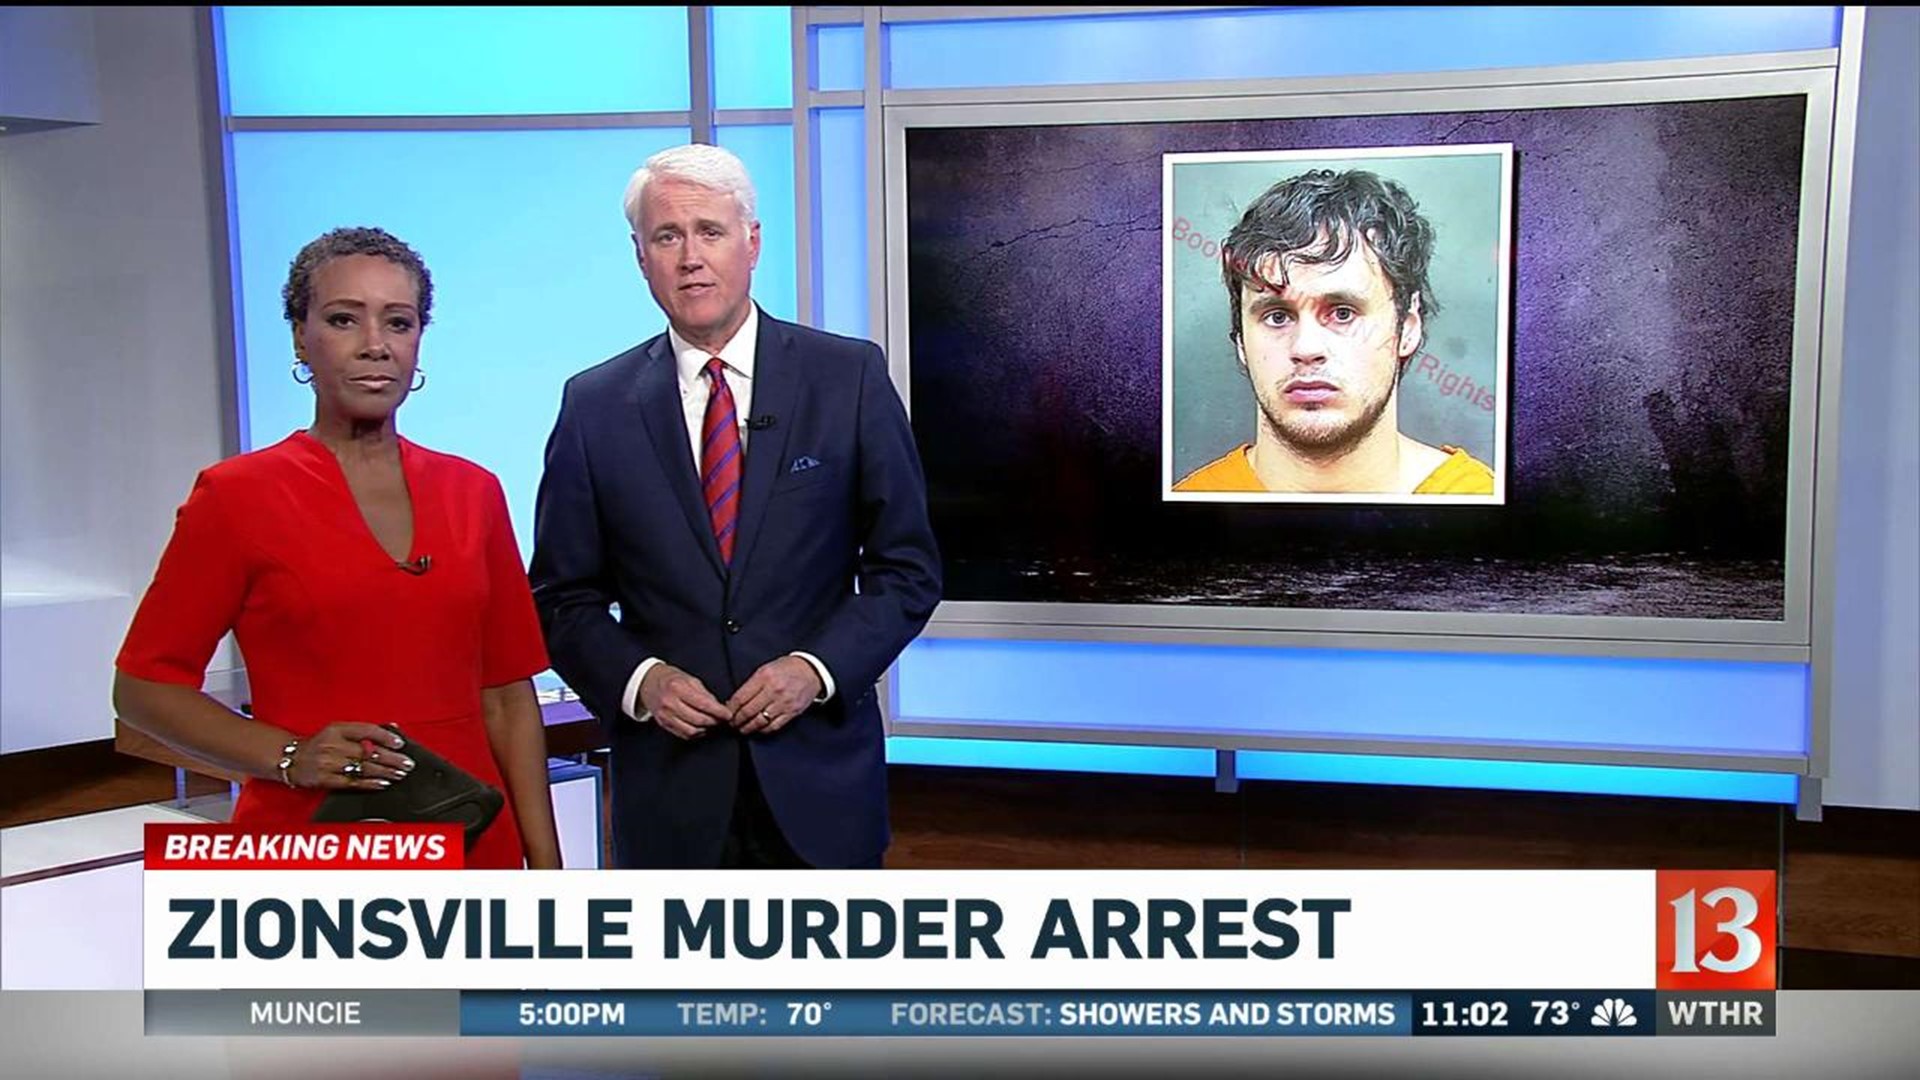 Zionsville Murder Arrest